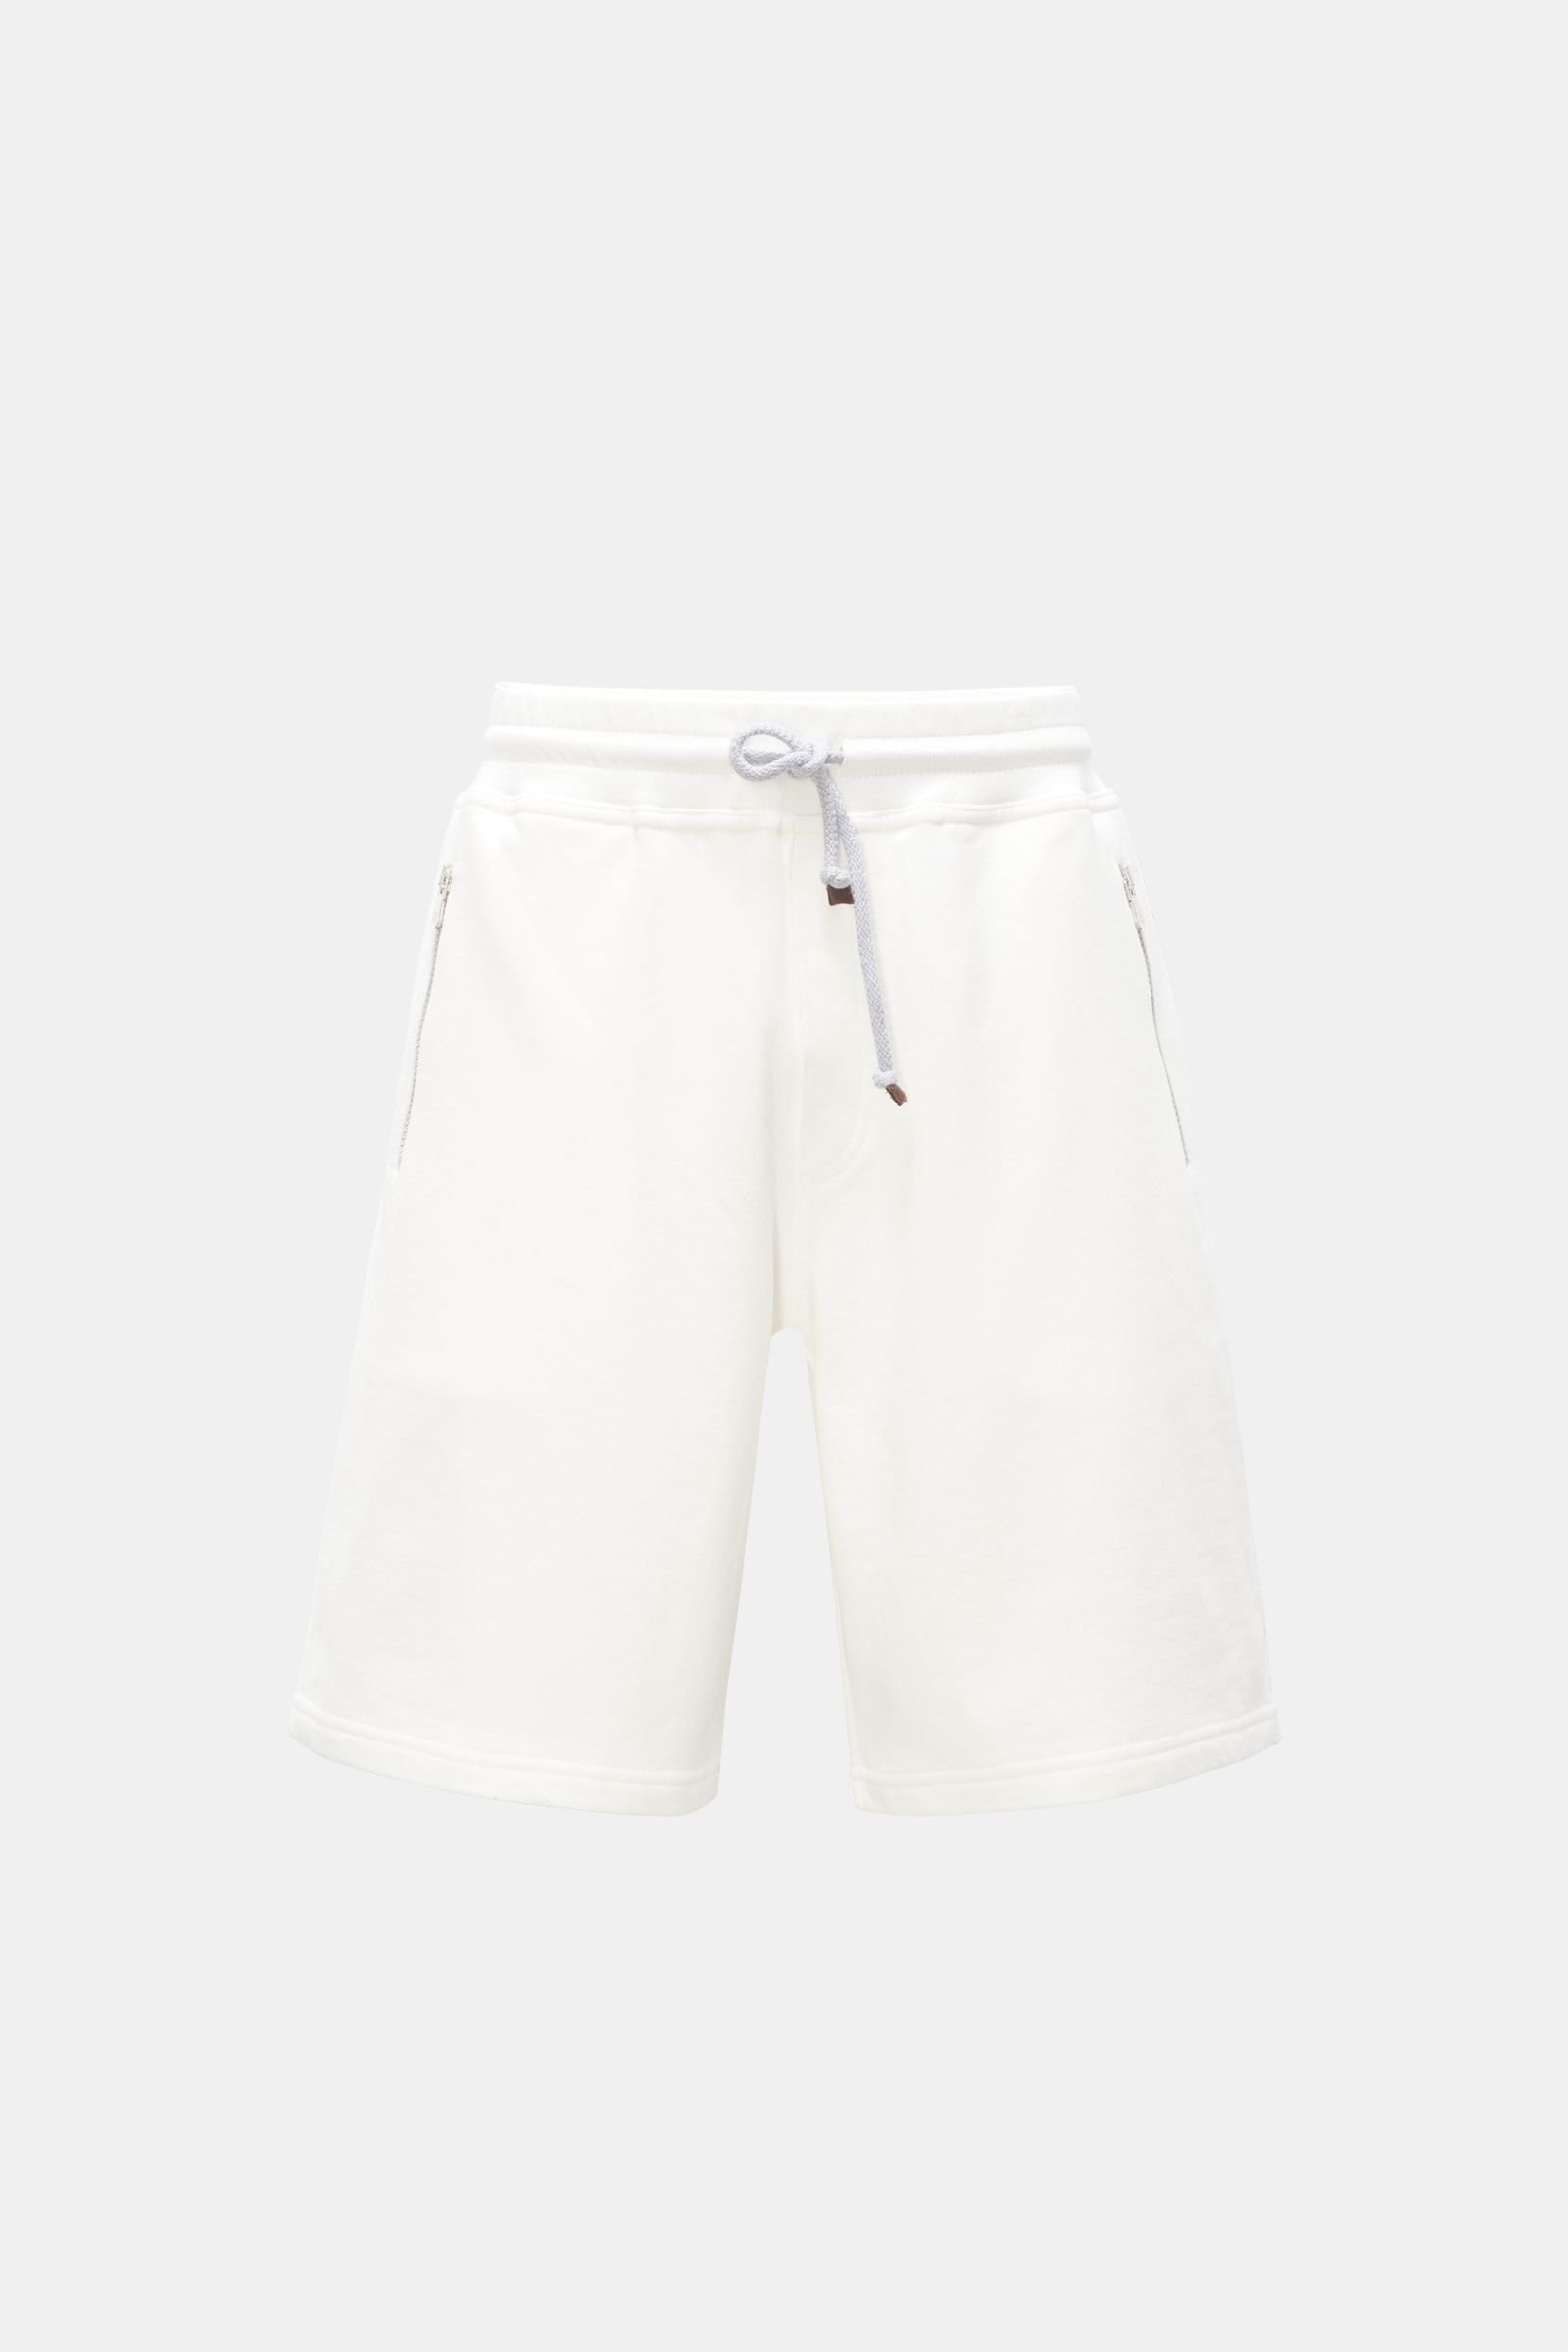 Sweat shorts white